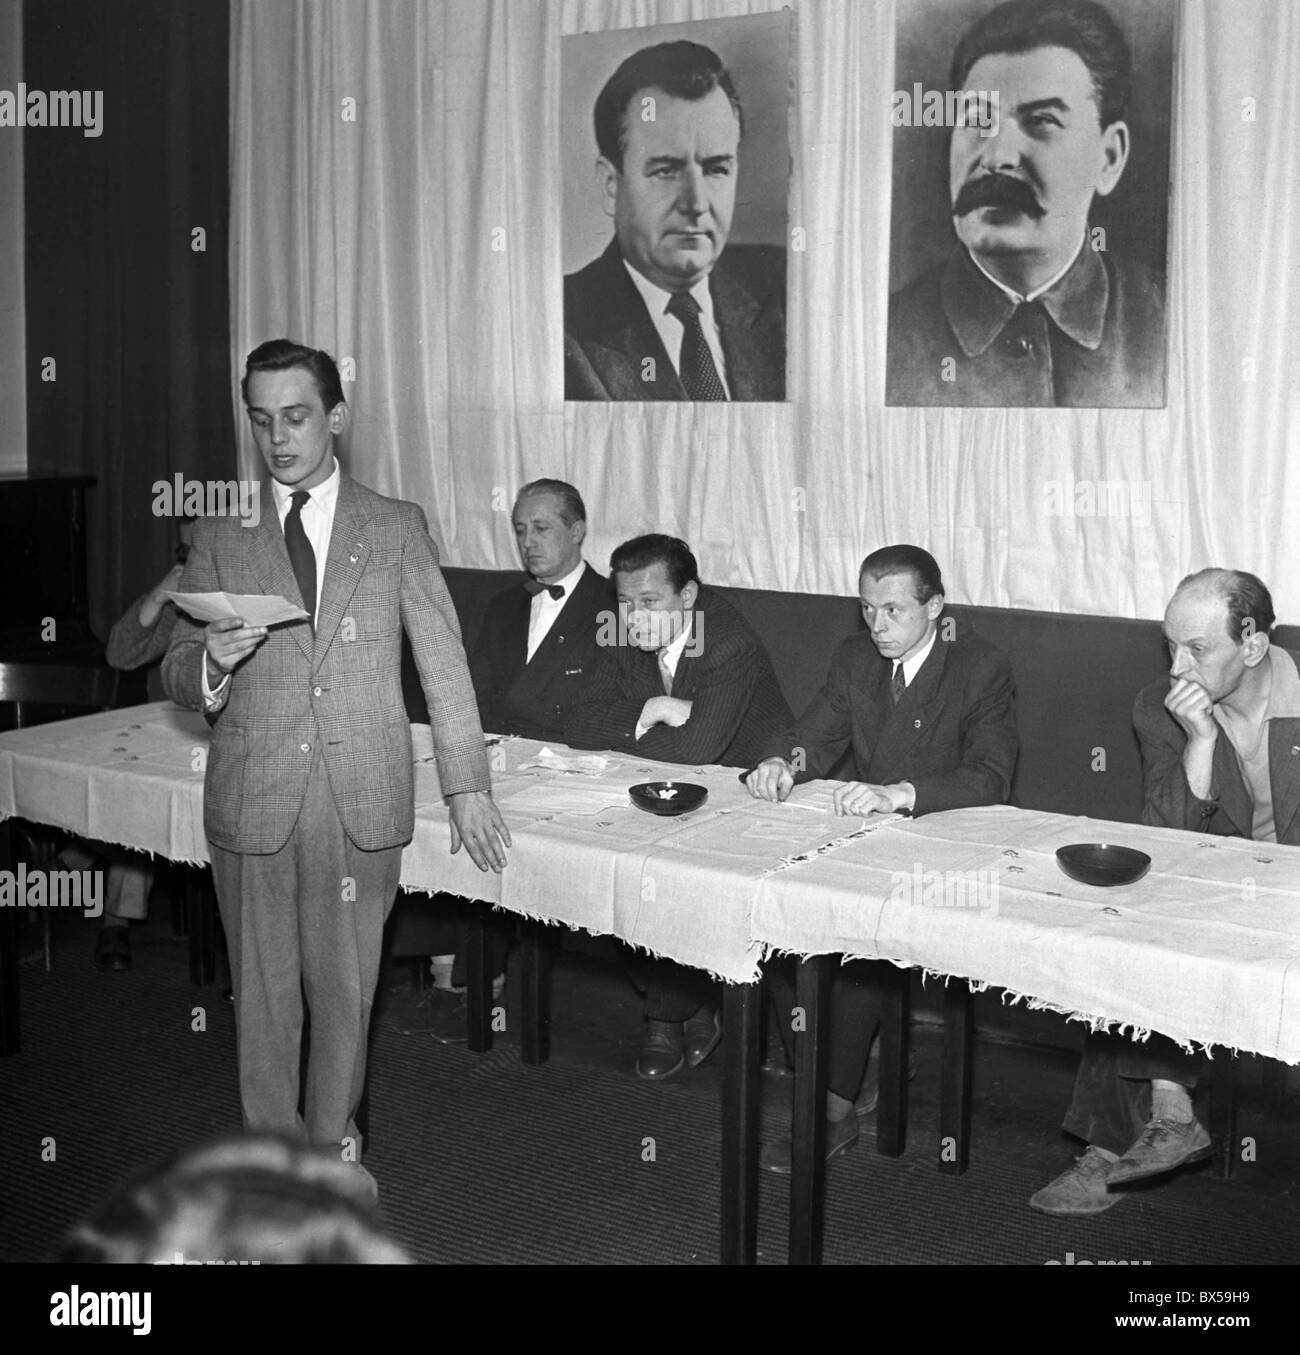 Prag - Tschechoslowakei 1951. Riesige Porträts von kommunistischen Diktatoren Stalin und Gottwlad hängen an der Wand beim tschechischen Schauspieler Stockfoto